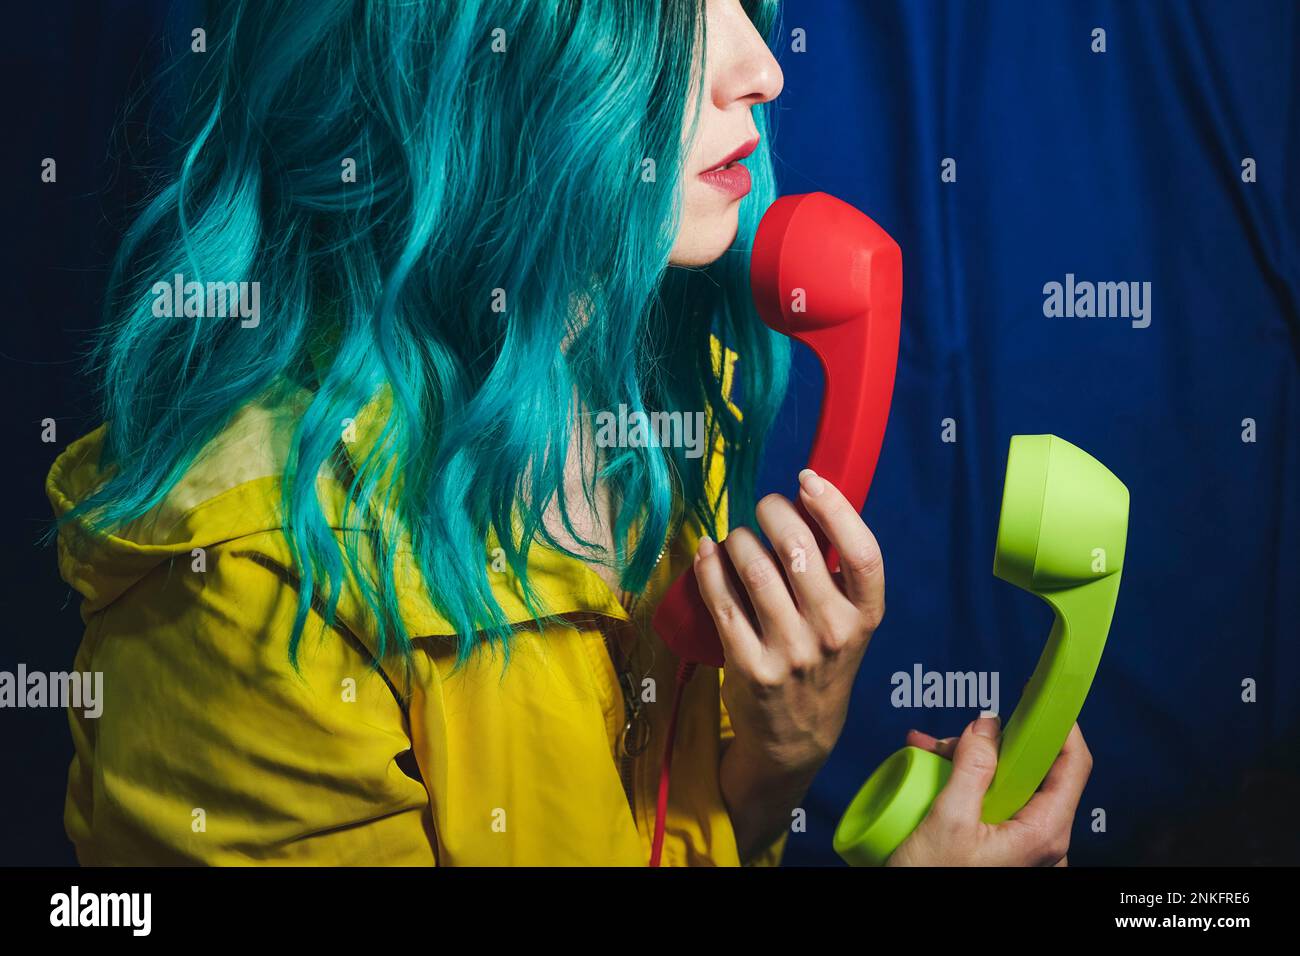 Frau mit gefärbtem Haar, die rote und grüne Telefonhörer vor blauem Hintergrund hält Stockfoto